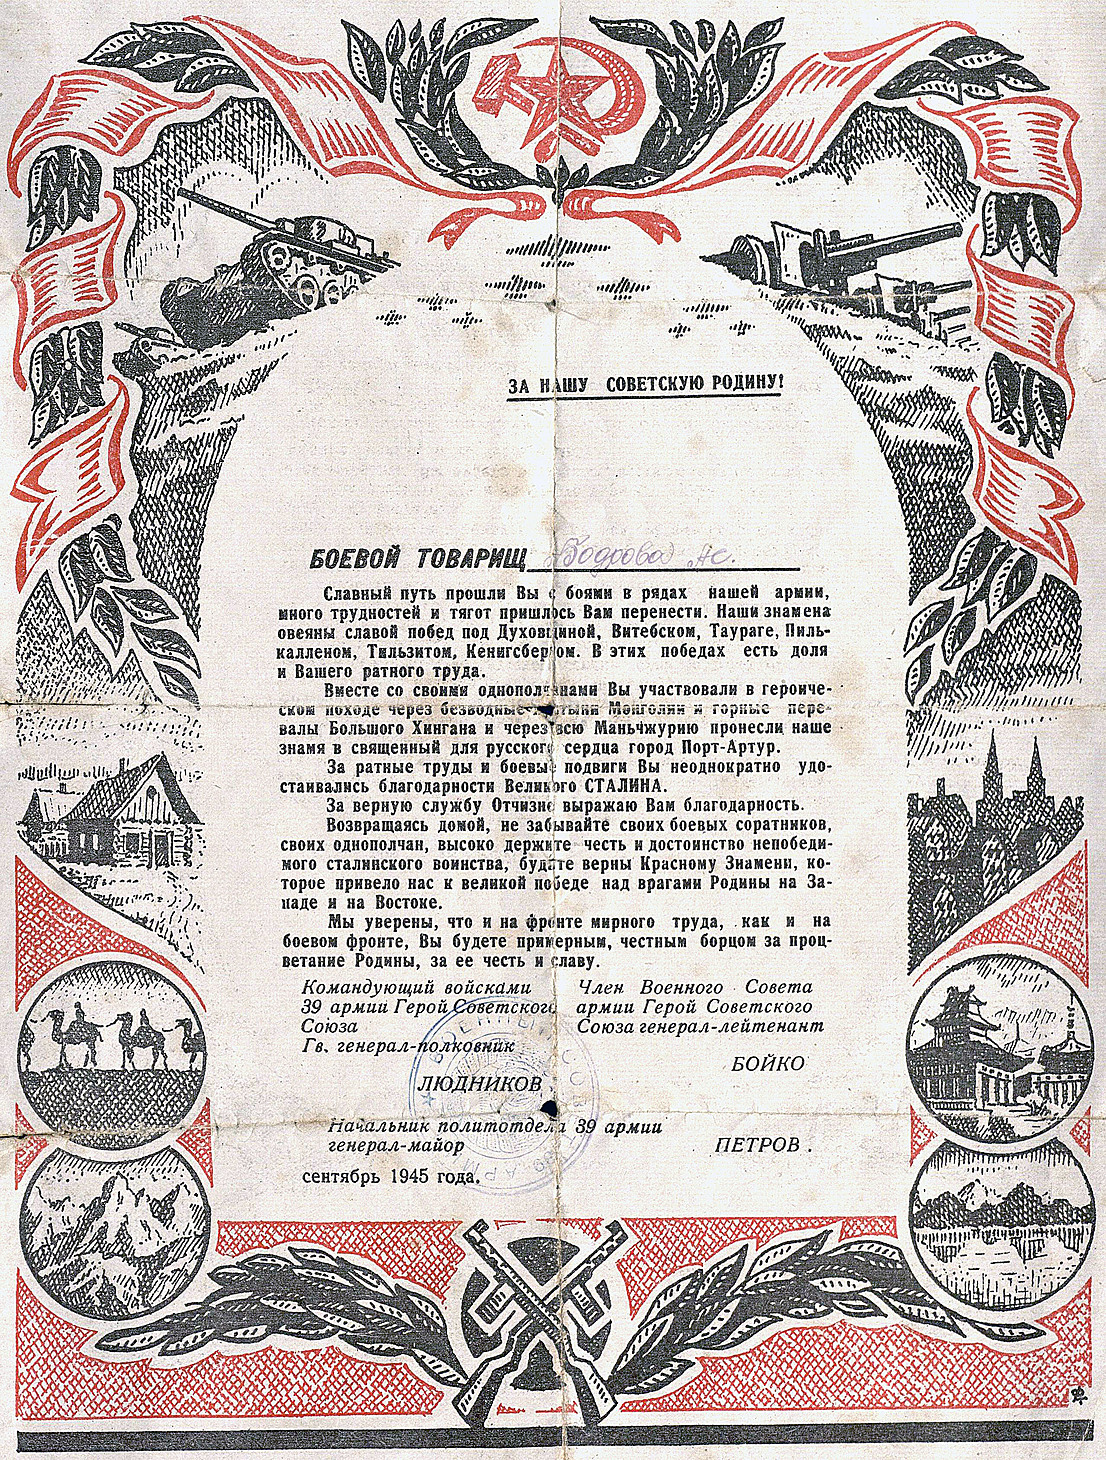 Письмо благодарственное Бодровой А.С. от командования 39 армии за верную службу Отчизне, в связи с демобилизацией.